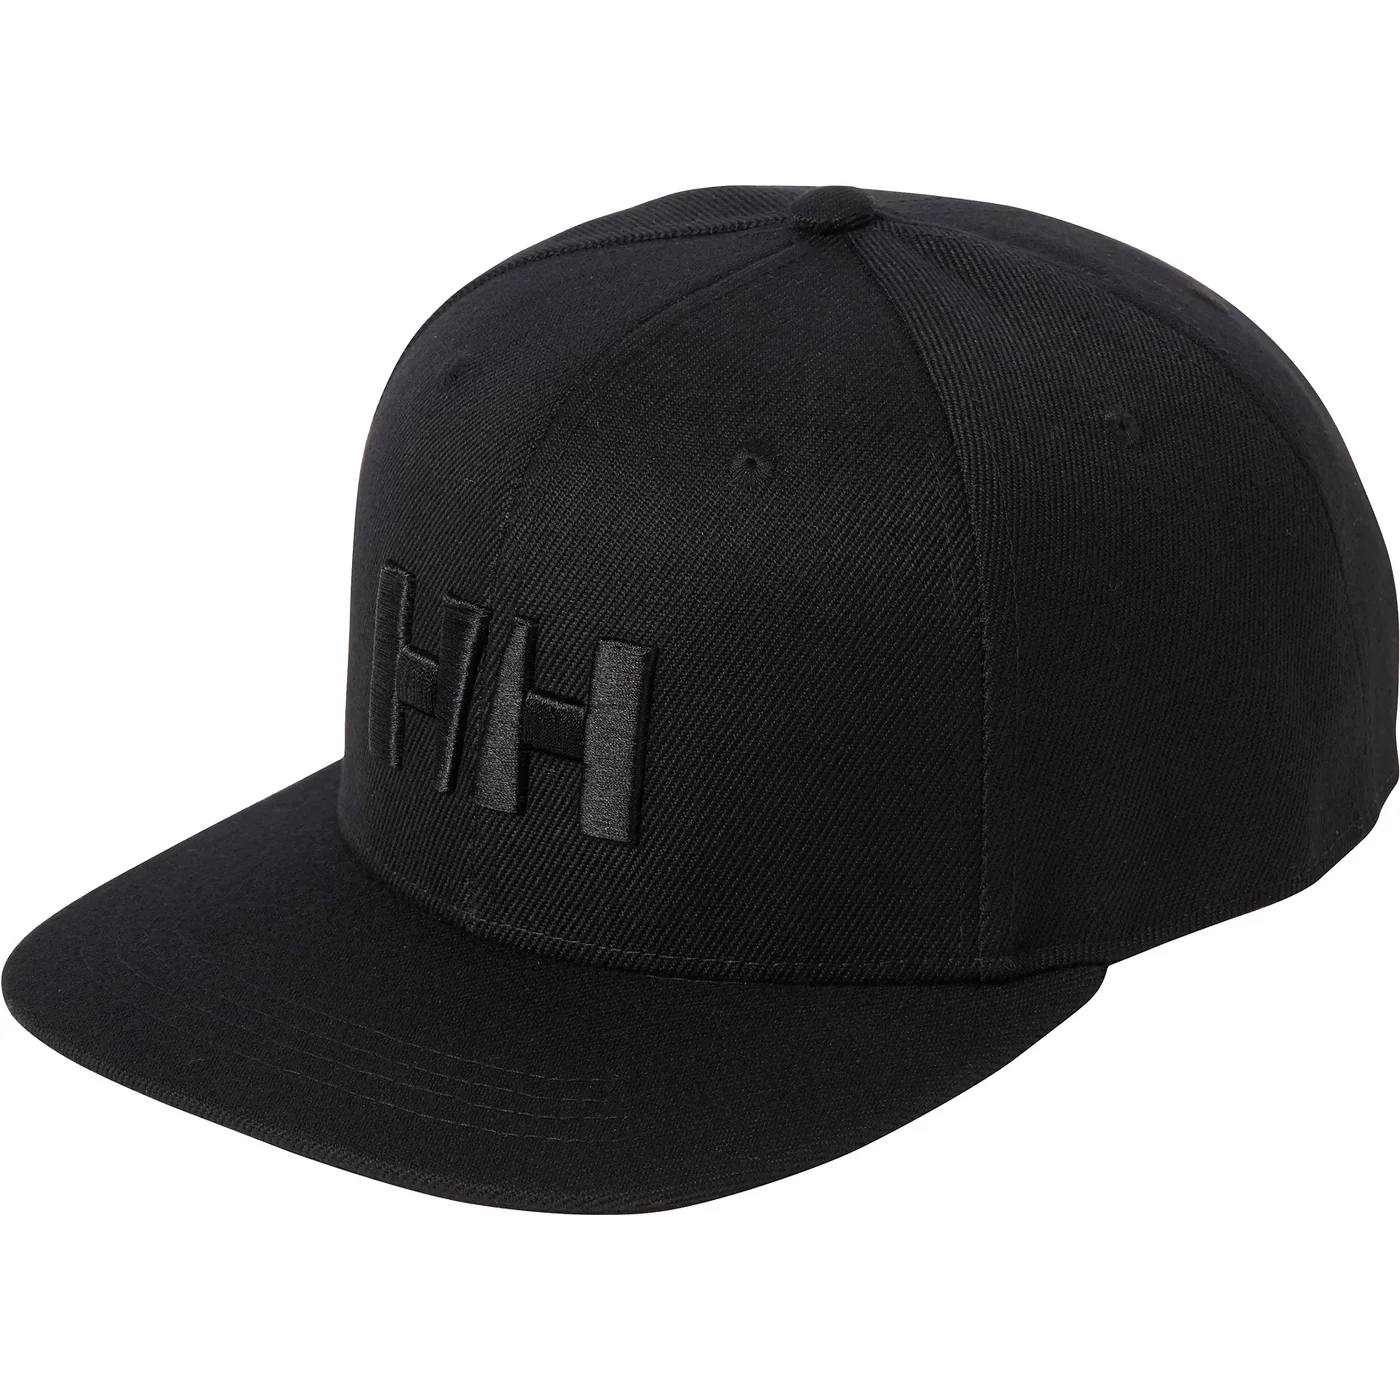 HELLYHANSEN HERREN HH BRAND CAP Black 59iaS7A7